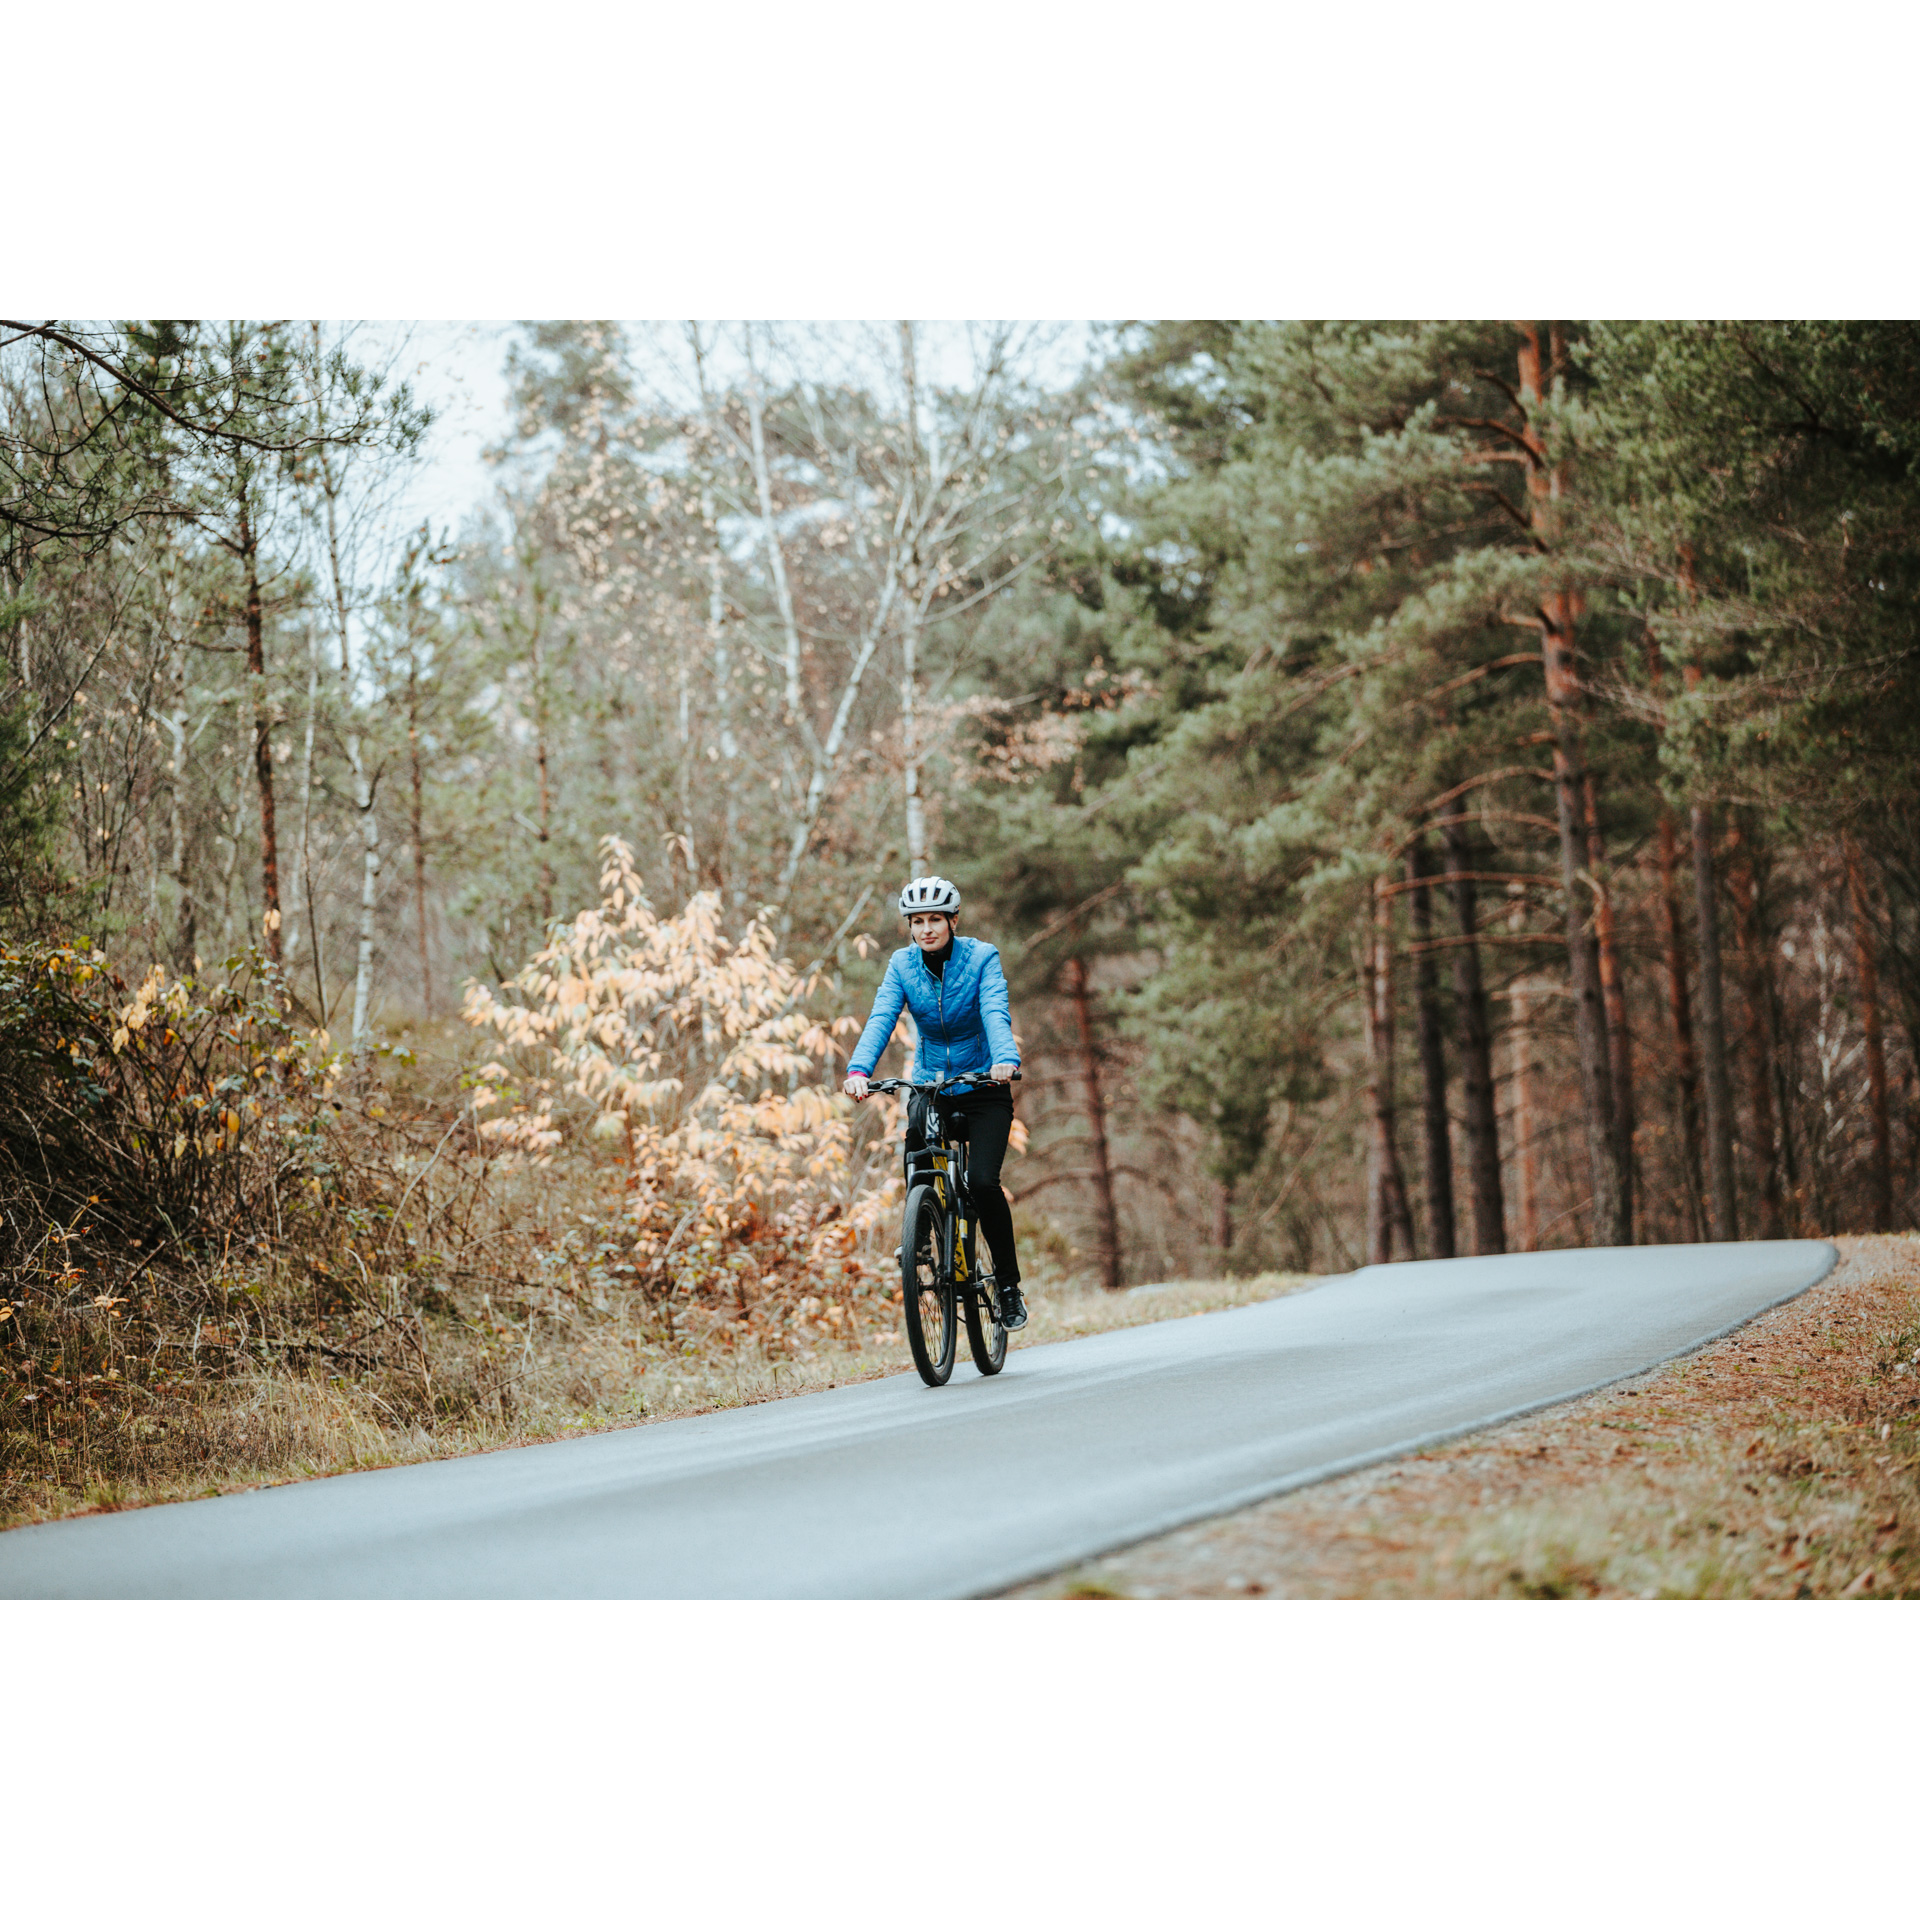 Rowerzystka w niebieskiej kurtce i białym kasku jadąca drogą asfaltową prowadzącą przez las